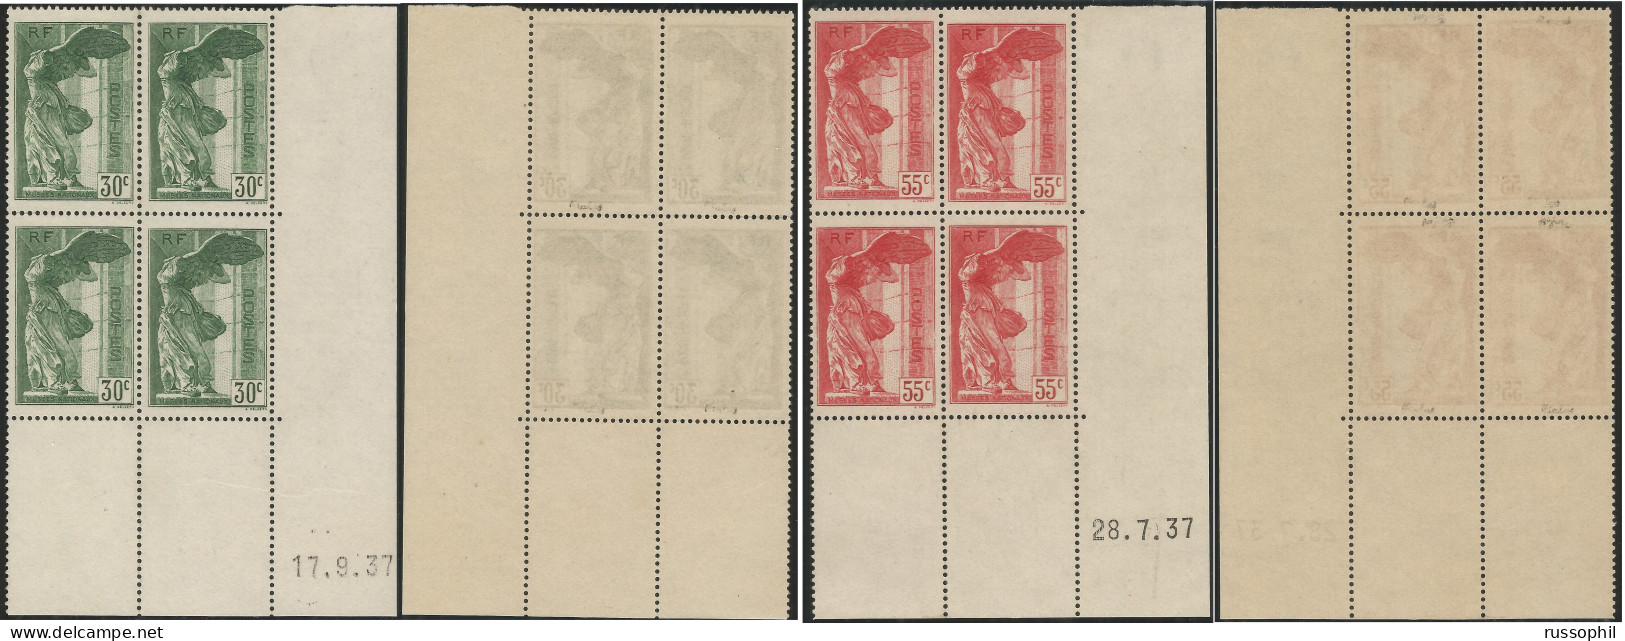 FRANCE - Yv #354/355  BLOC 4 COIN DATE 1937 - BIEN CENTRE, GOMME ORIGINALE (**) SIGNE CALVES - 1937 - 1930-1939